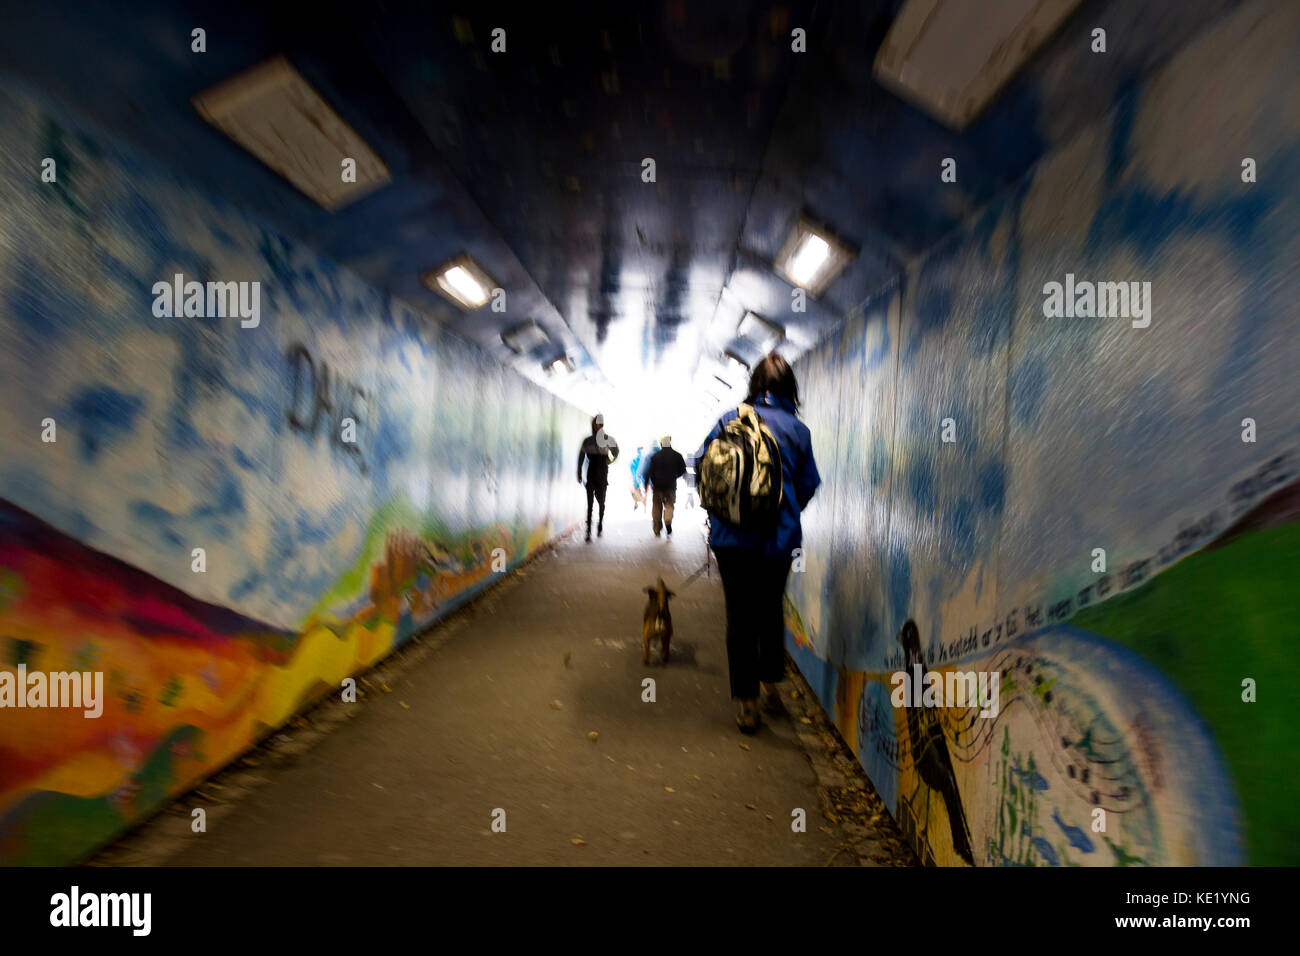 Vista surrealista de peatones en movimiento borrosa pintada de graffiti paso subterráneo Foto de stock